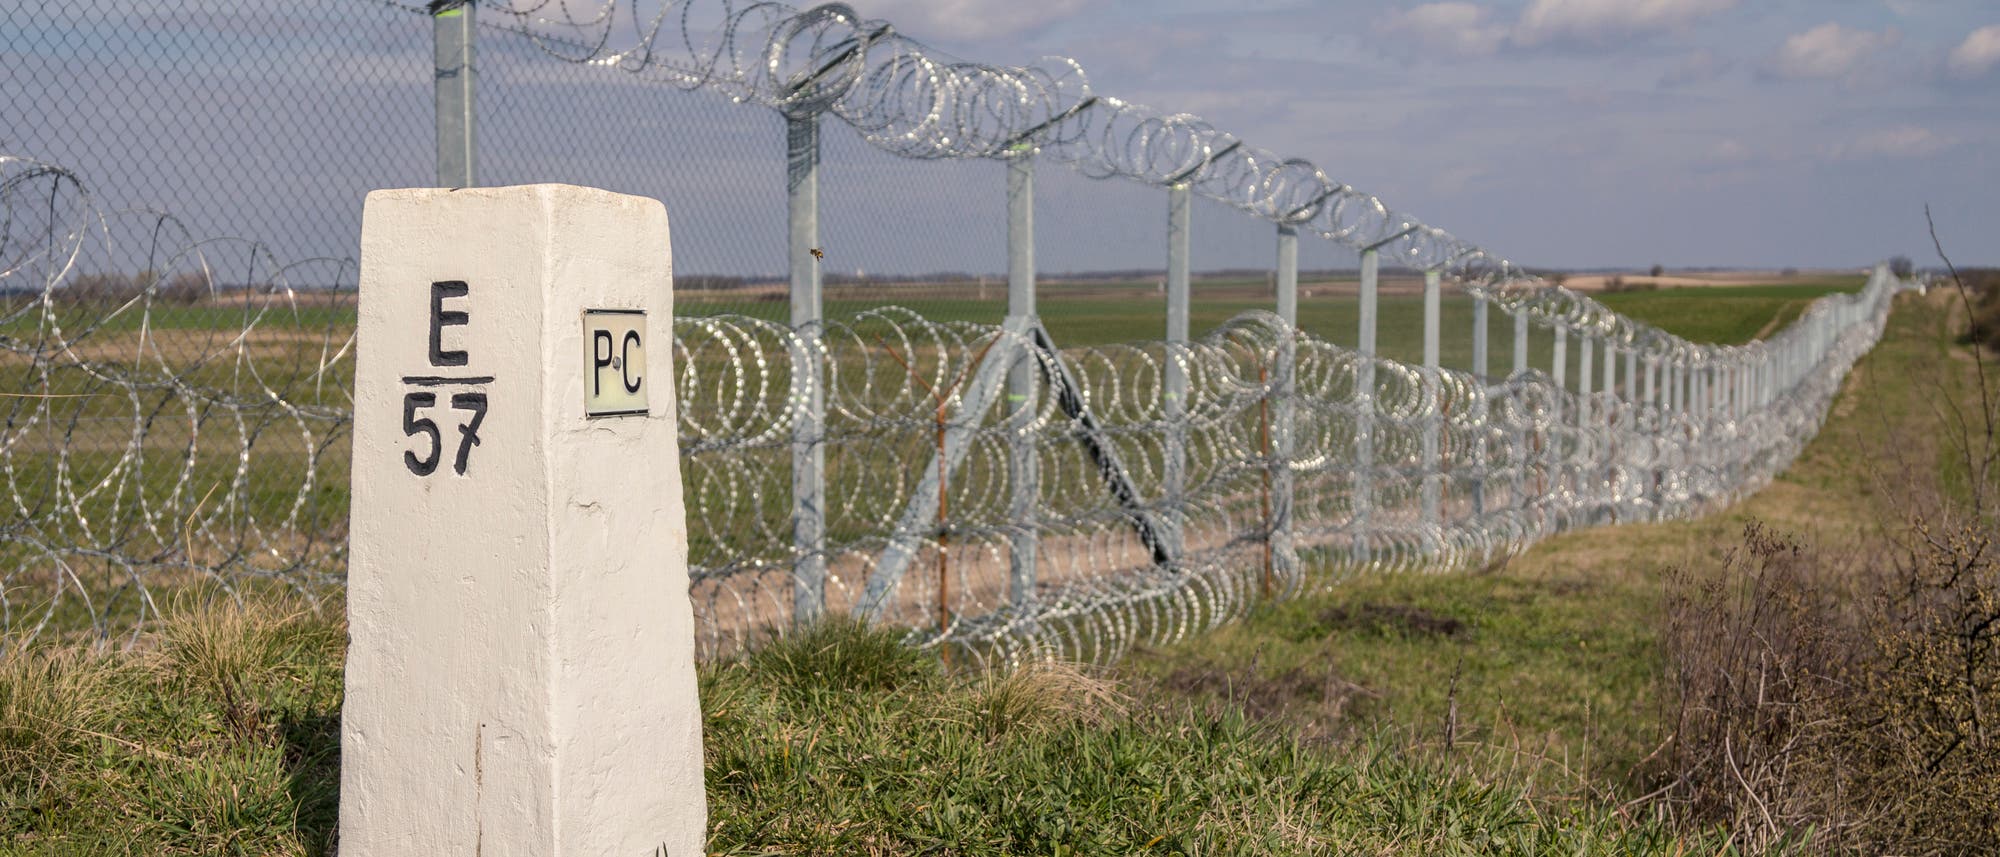 Grenzzäune wie dieser zwischen Serbien und Ungarn werden wieder vielerorts in Europa errichtet.